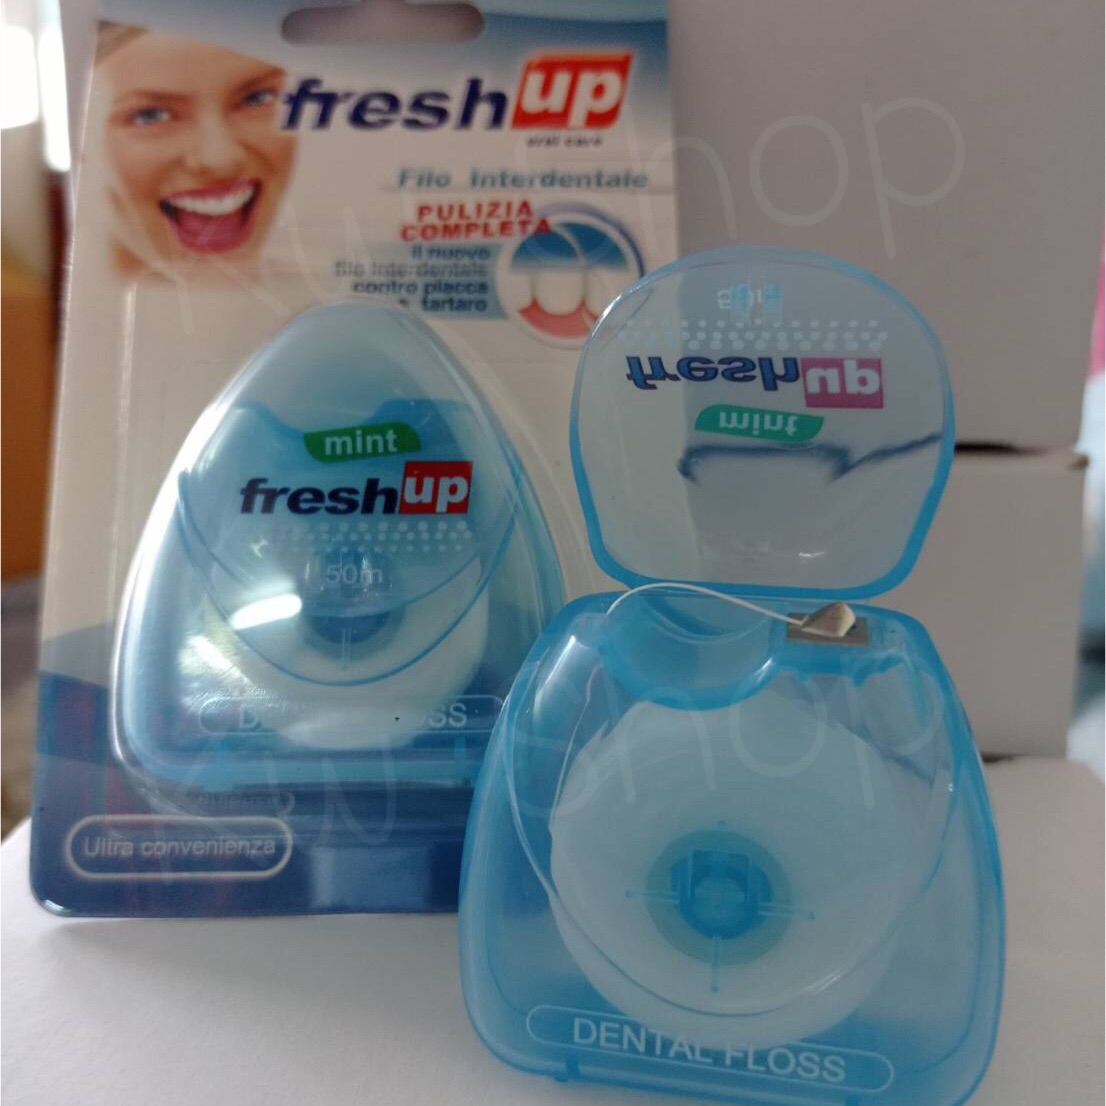 (ซื้อ 3 ชิ้น ส่งฟรี+ มีของแถม) Fresh Up Dental Floss ไหมขัดฟัน เคลือบขี้ผึ้ง 50 เมตร (กล่องสีฟ้า)